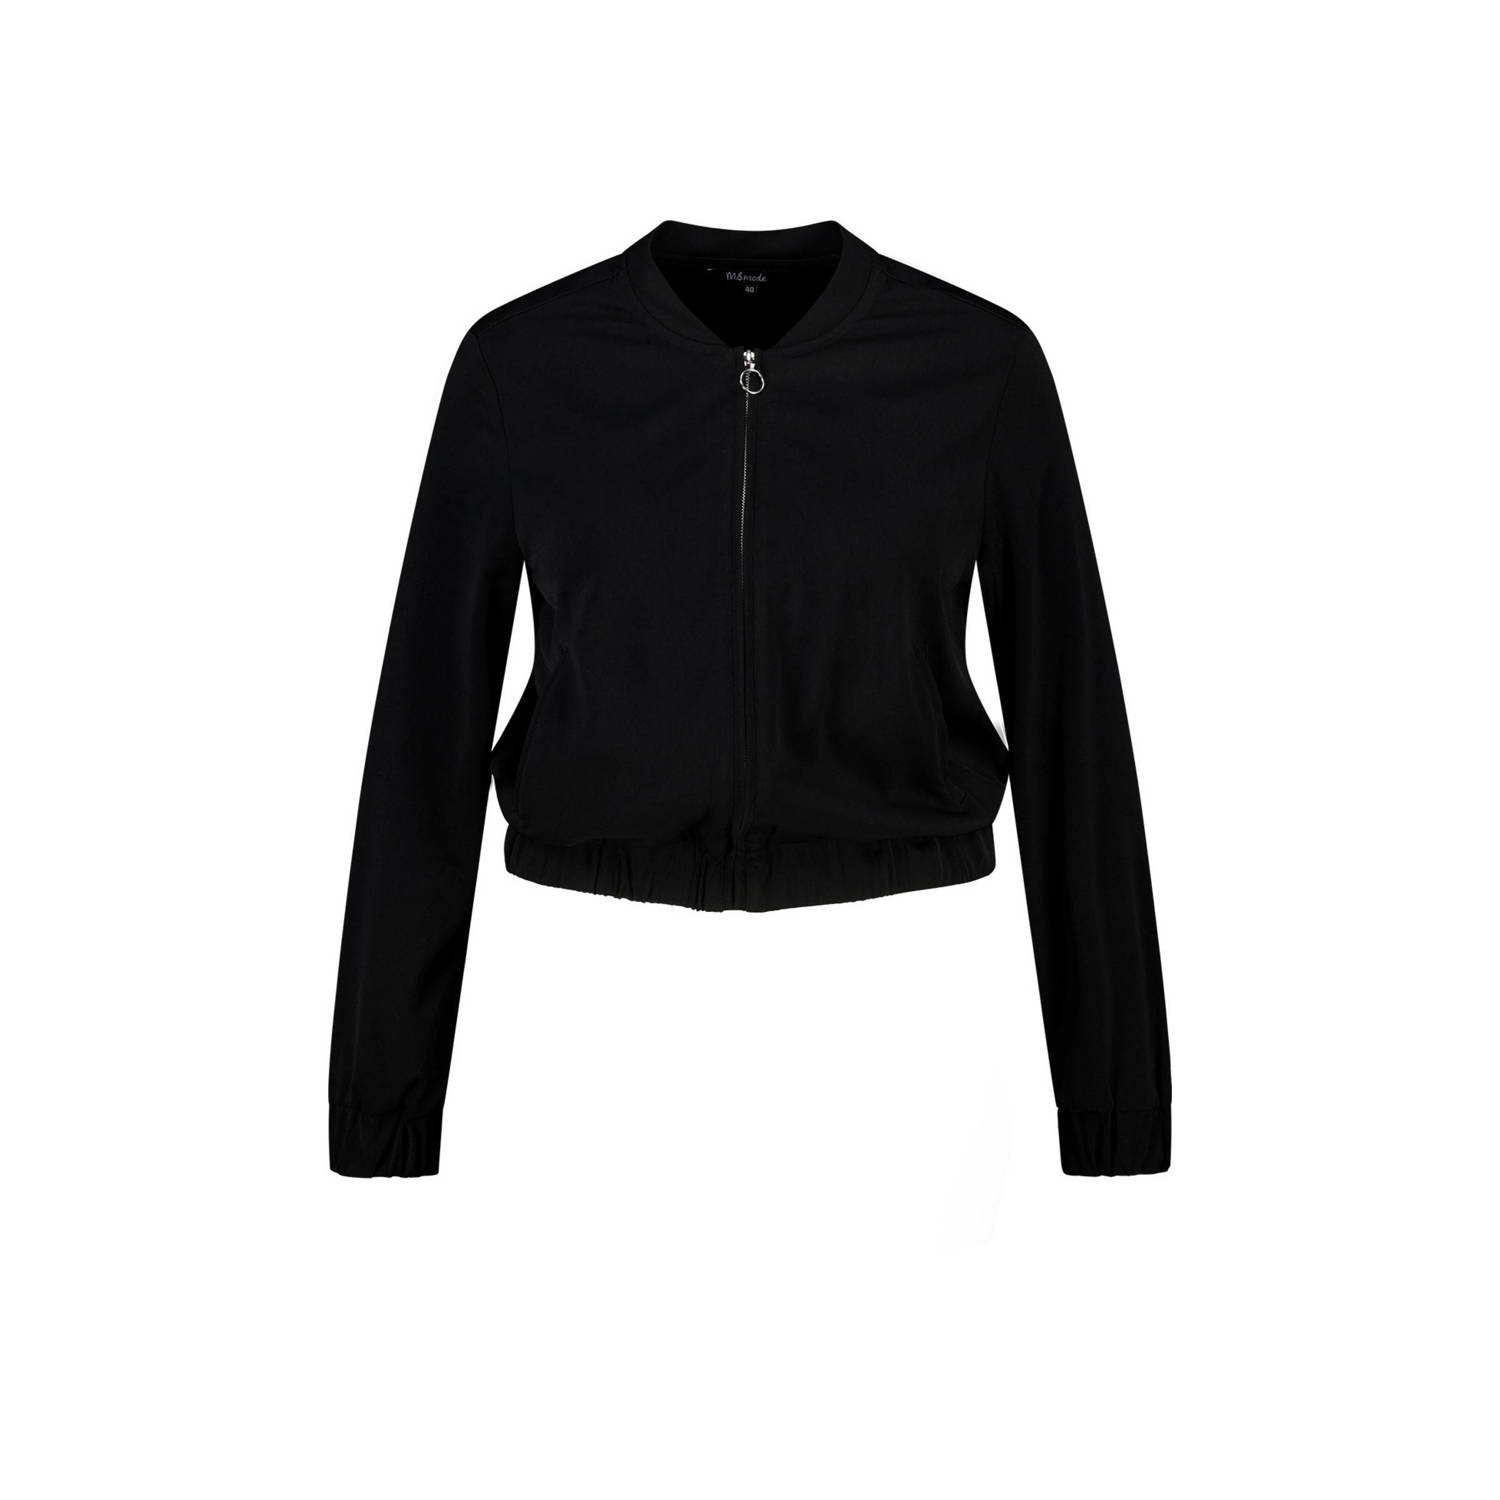 MS Mode jasje zwart